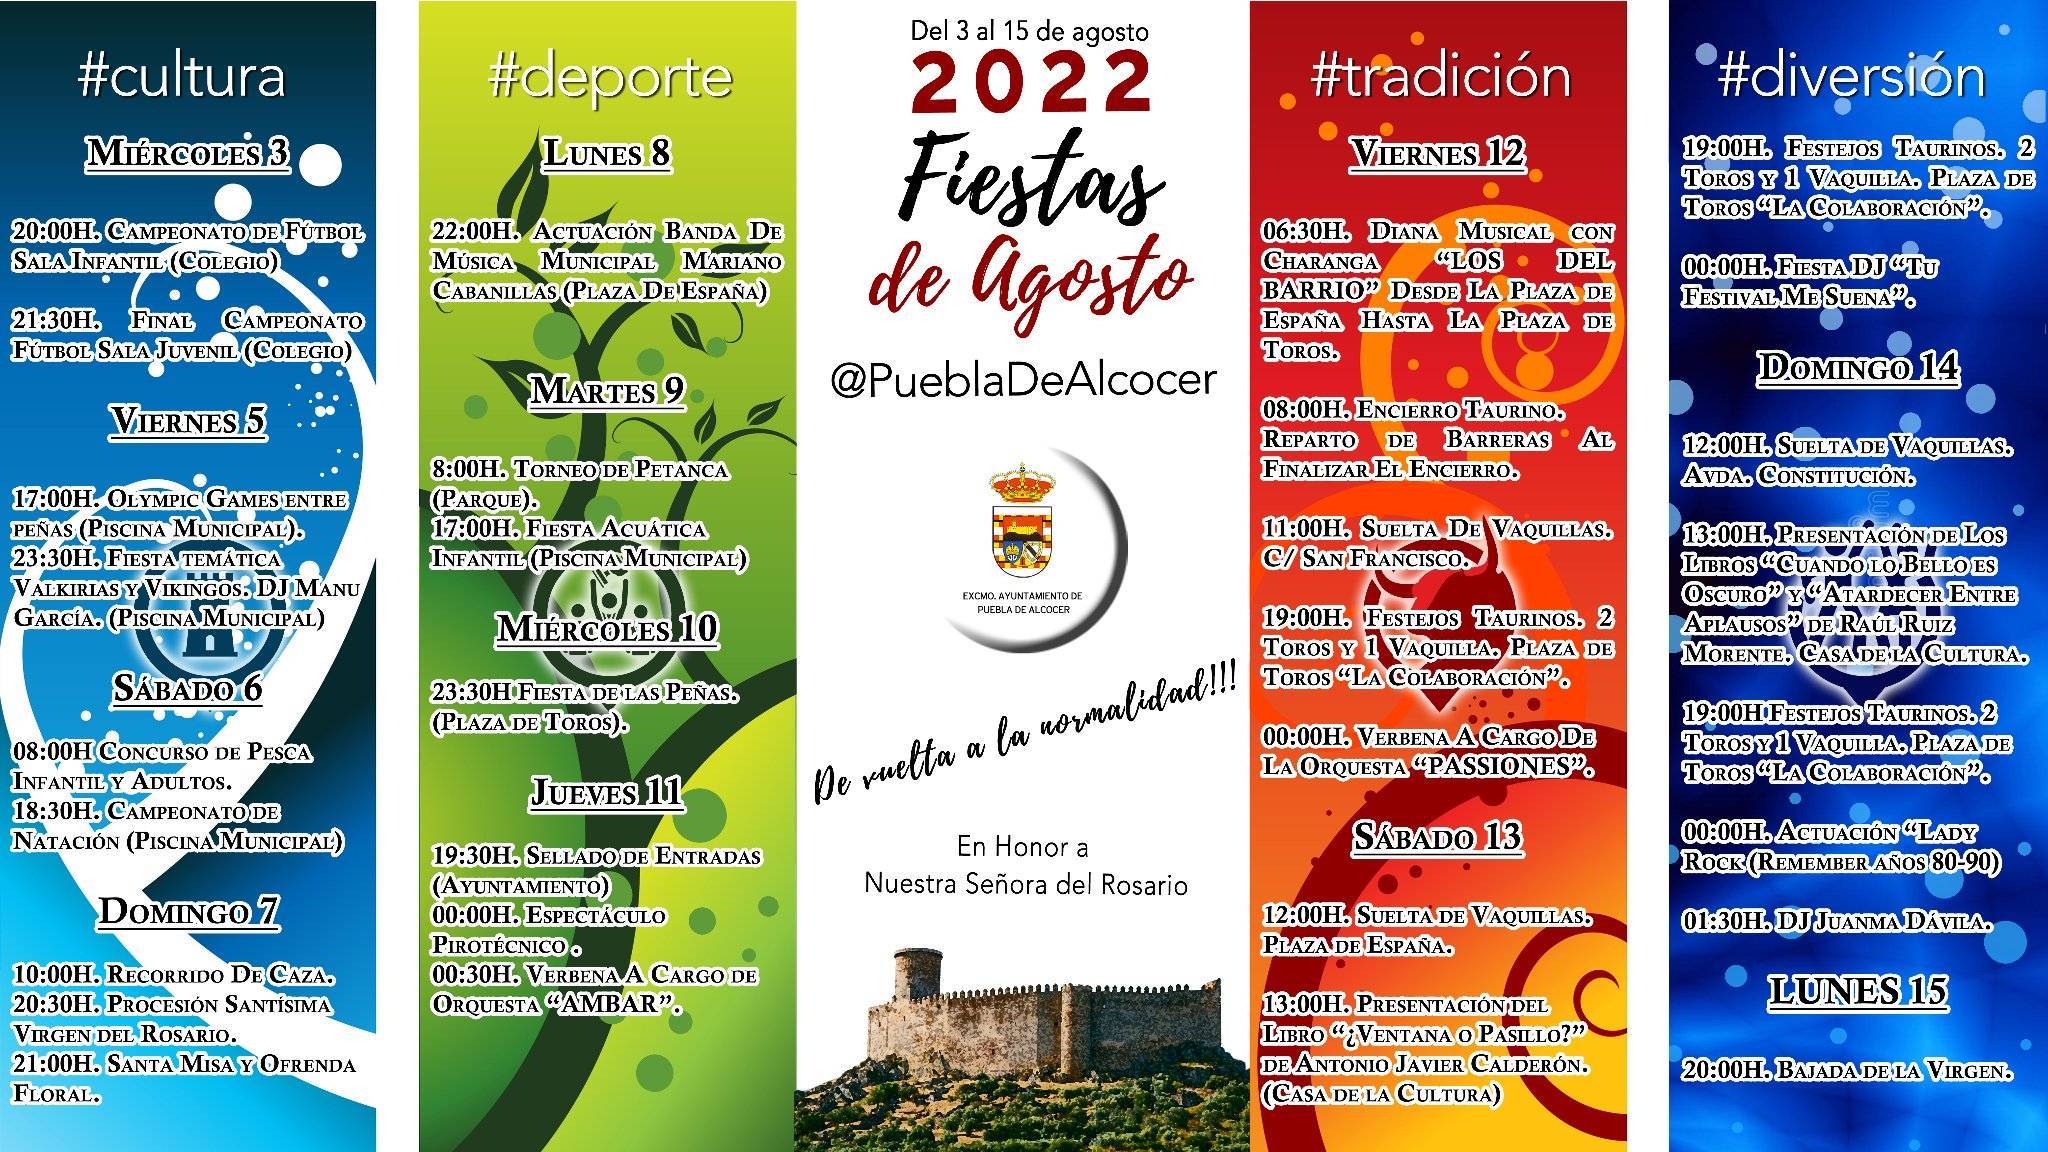 Fiestas en honor a nuestra Señora del Rosario (2022) - Puebla de Alcocer (Badajoz) 2